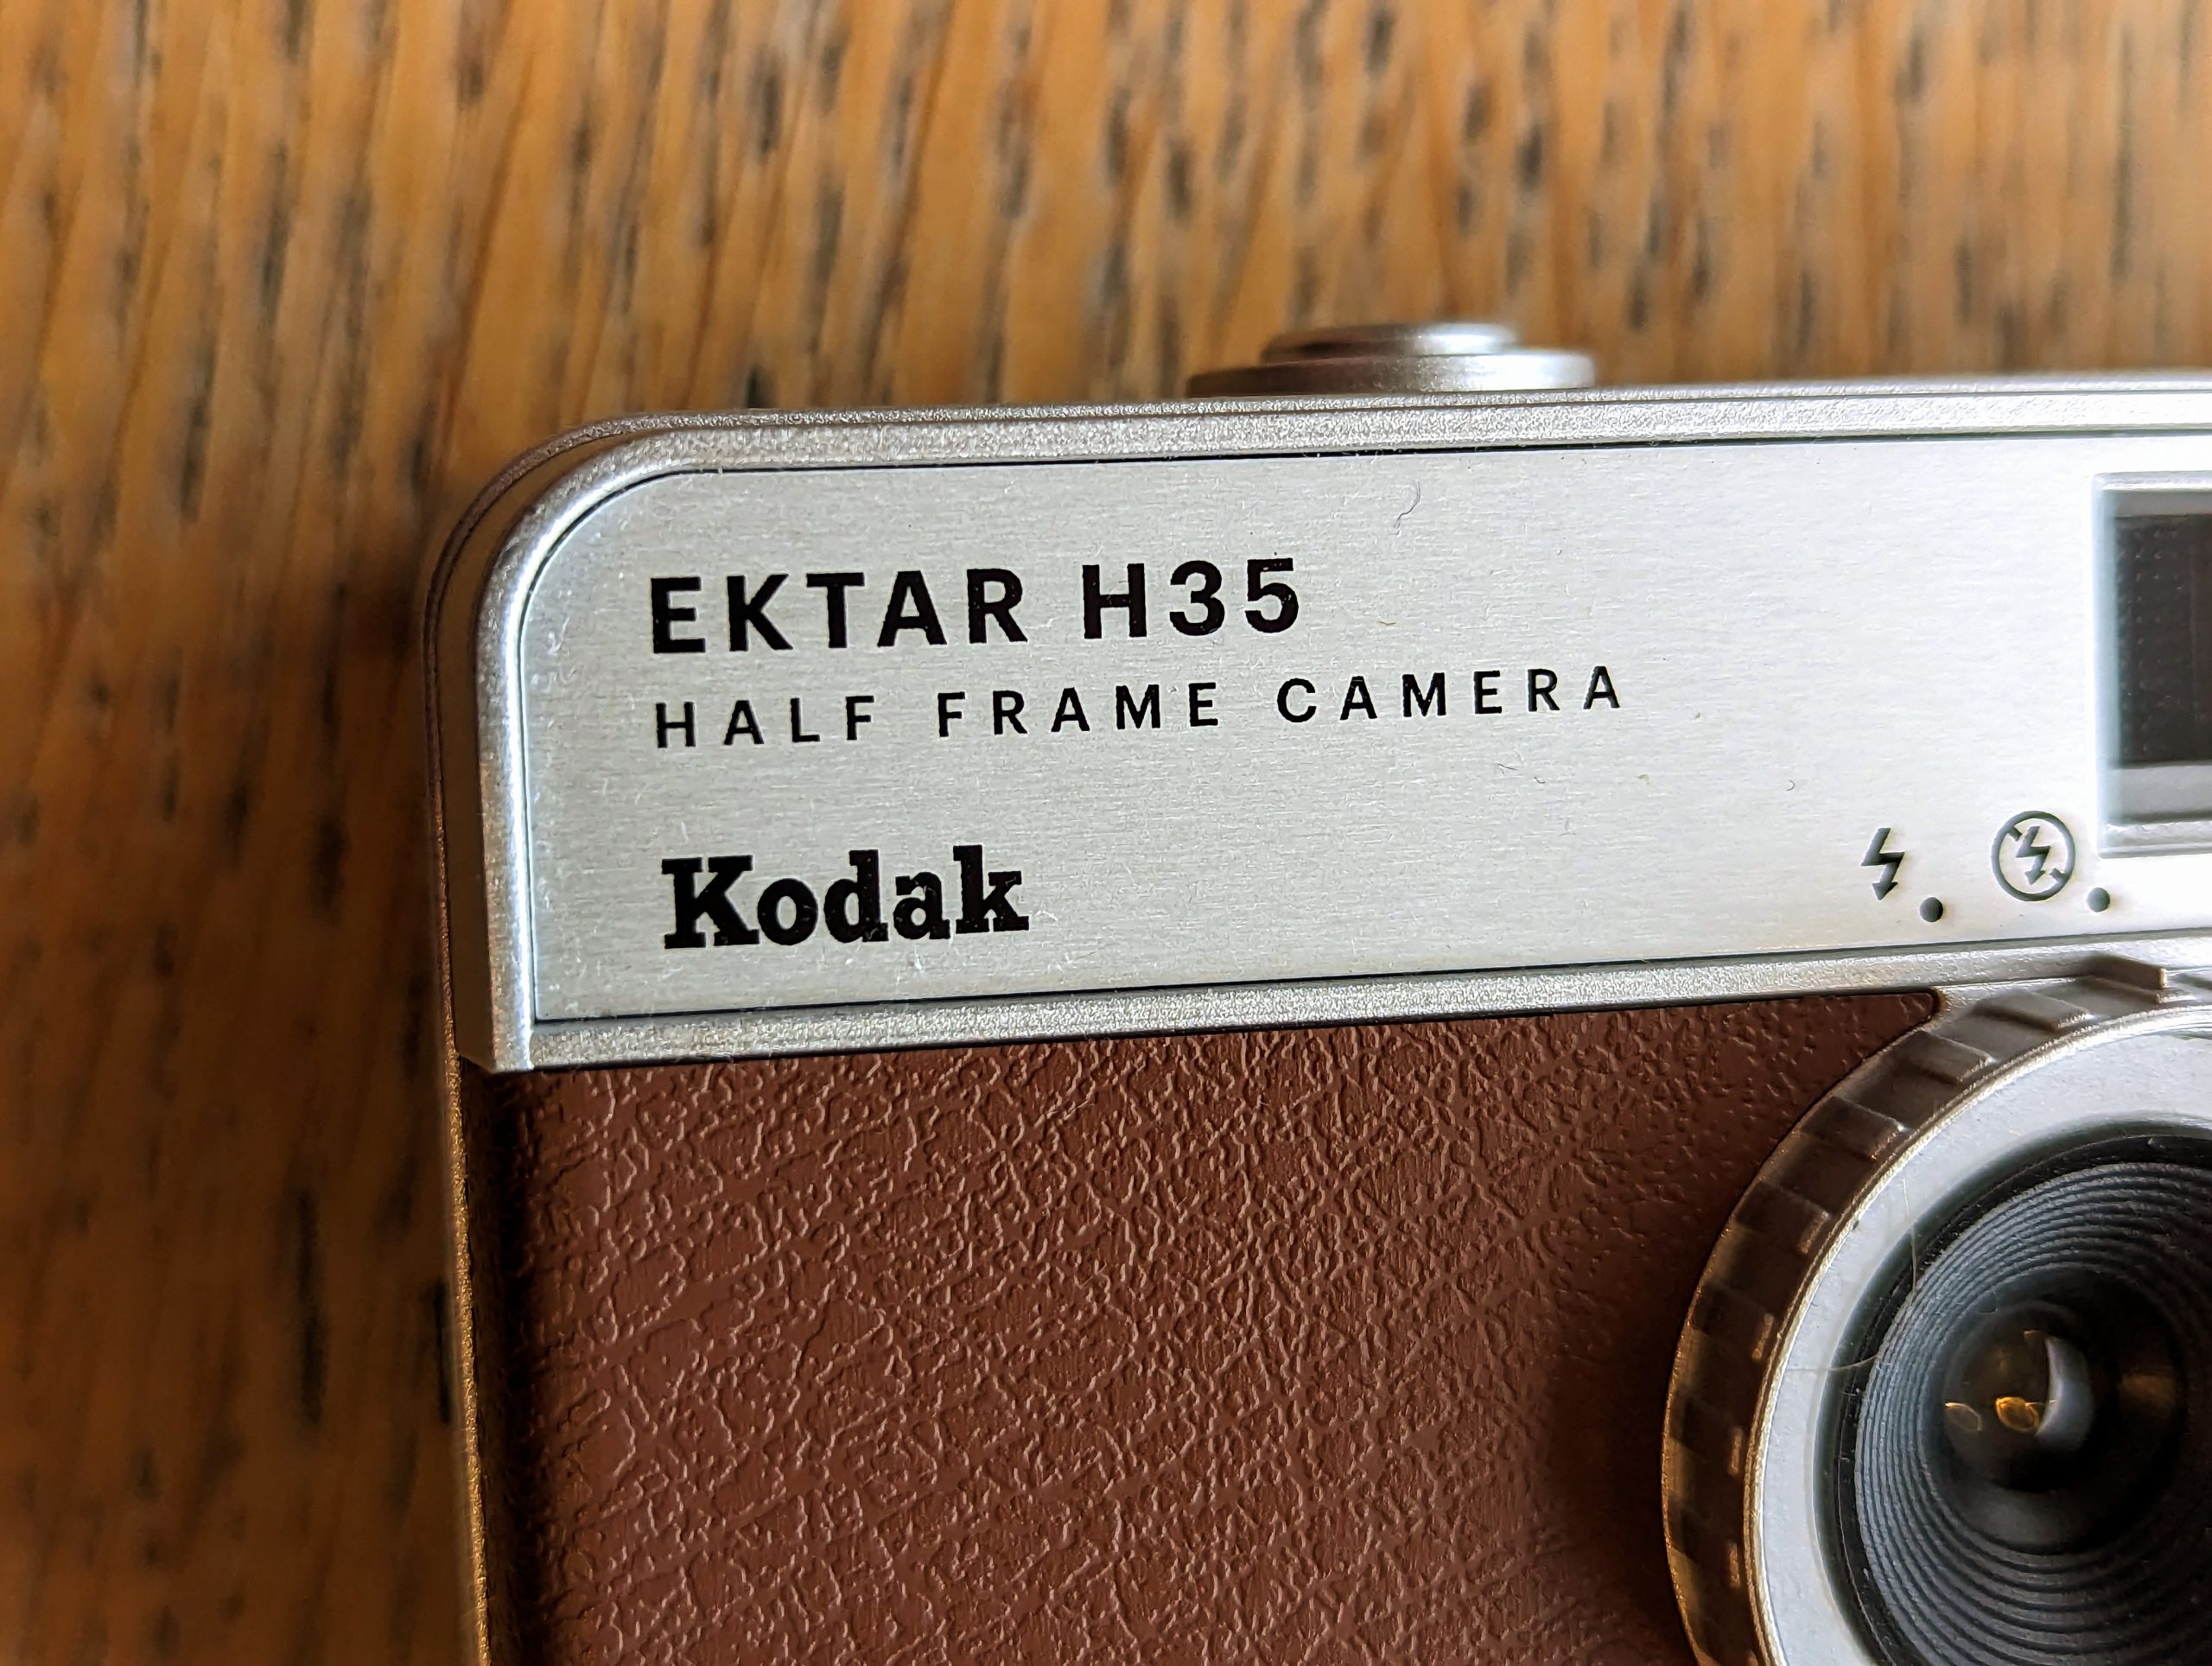 
Kodak Ektar H35 detailing